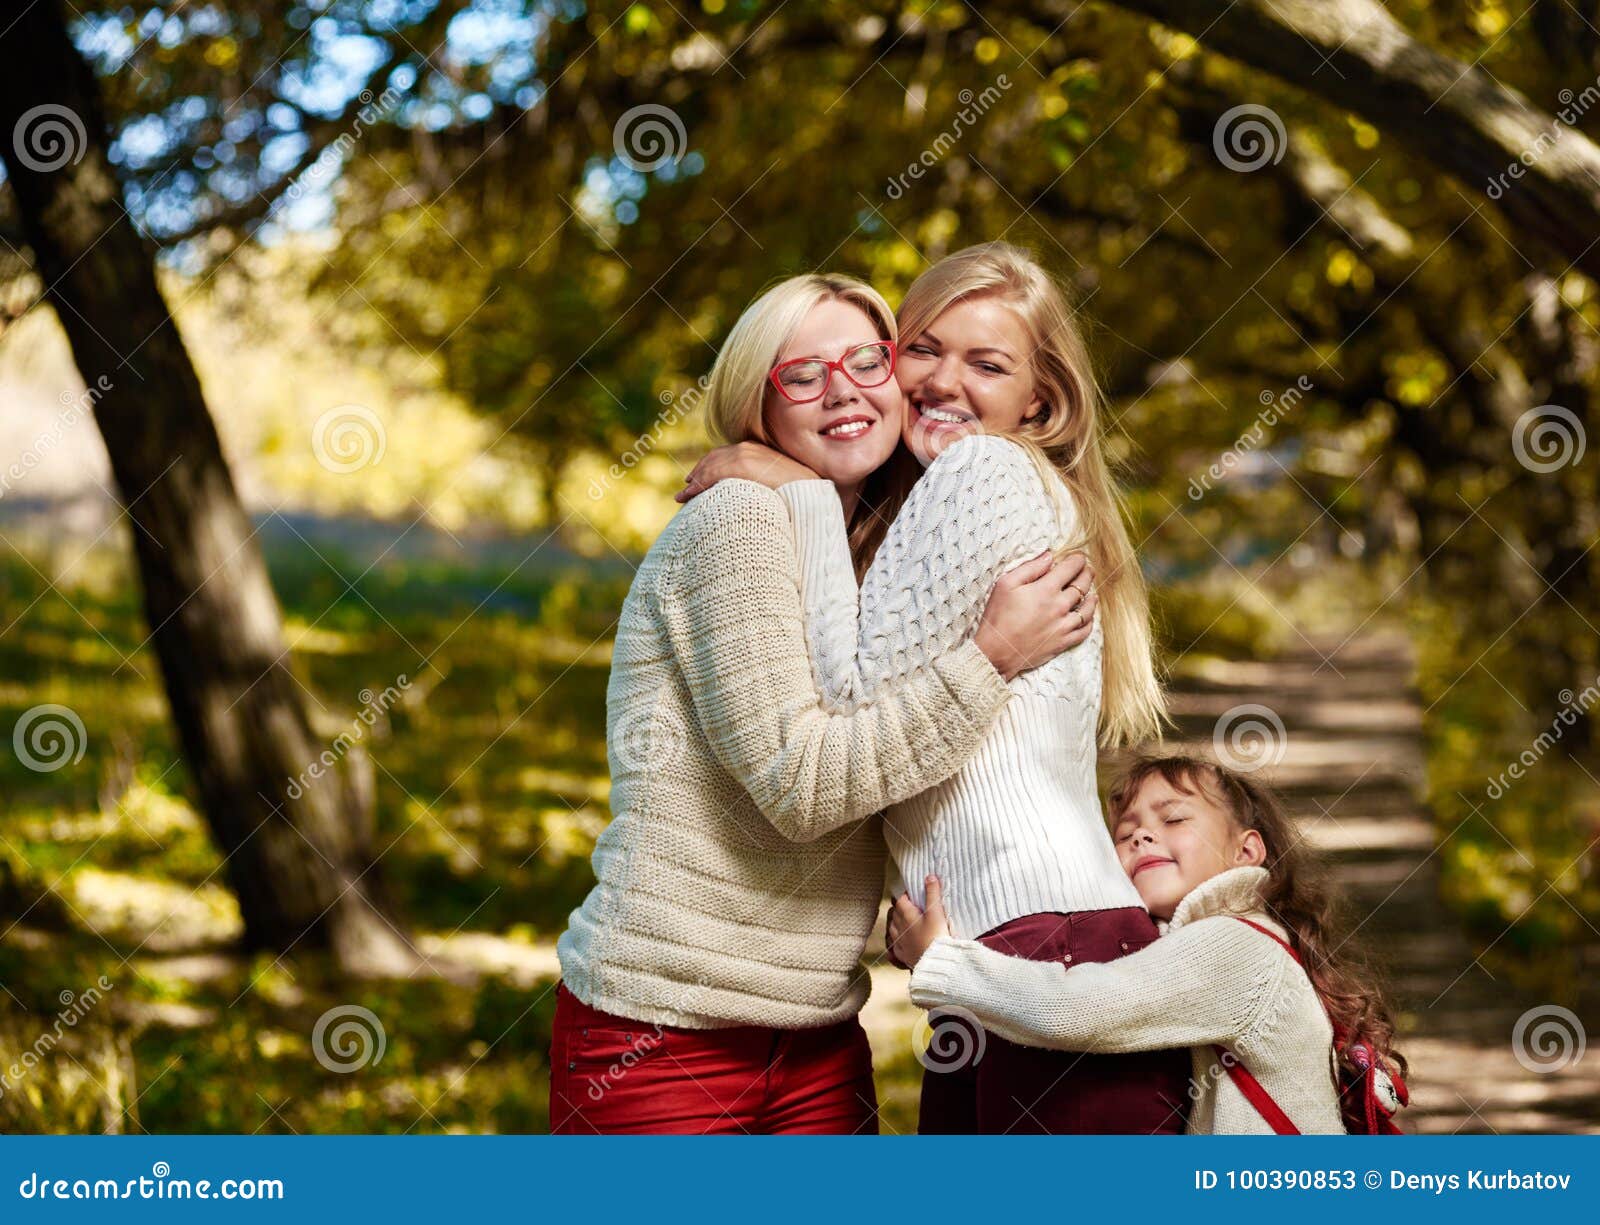 两个可爱的姐妹 库存图片. 图片 包括有 子孙, 绿色, 自然, 草甸, 女性, 使用, 休闲, 友谊, 本质 - 32367233